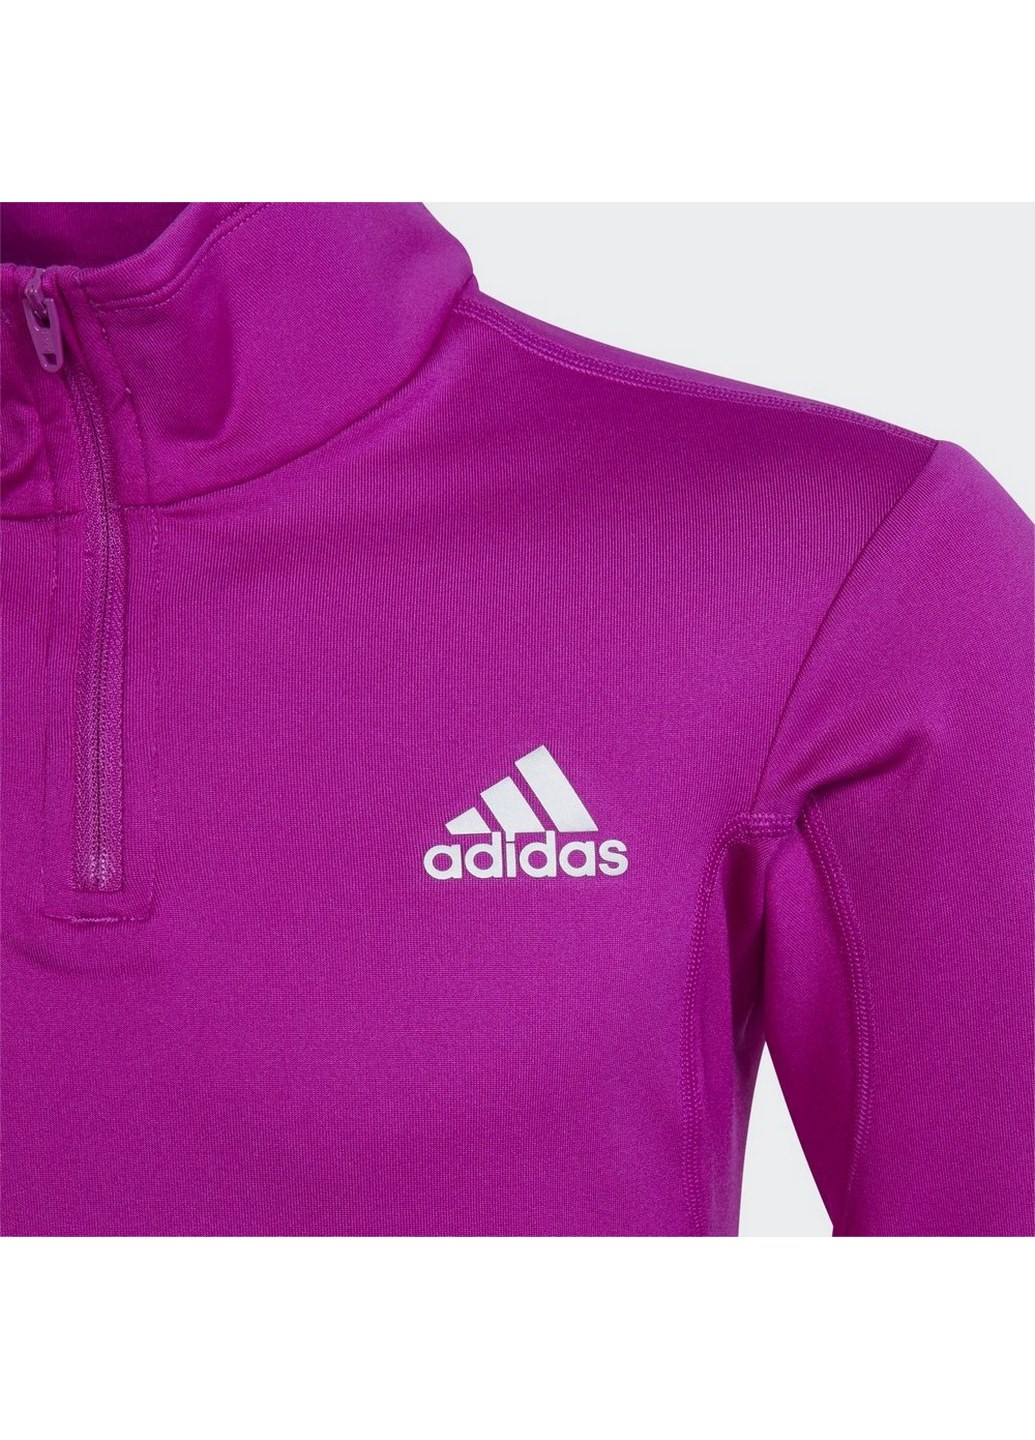 adidas детский джемпер aeroready warming reflective h16917 логотип фиолетовый спортивный